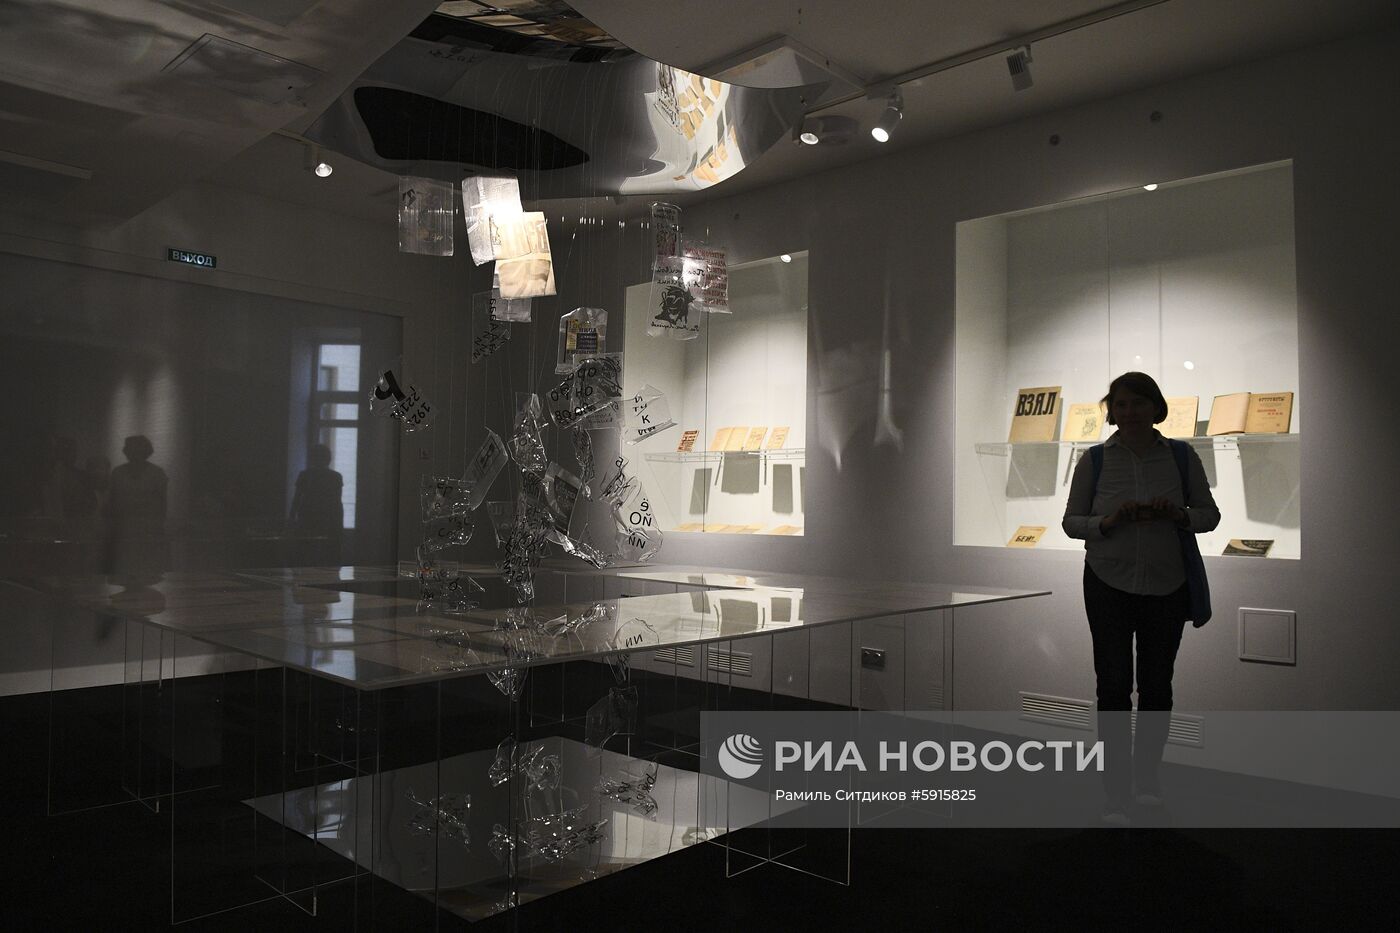 Открытие нового здания Государственного музея истории российской литературы имени В. И. Даля